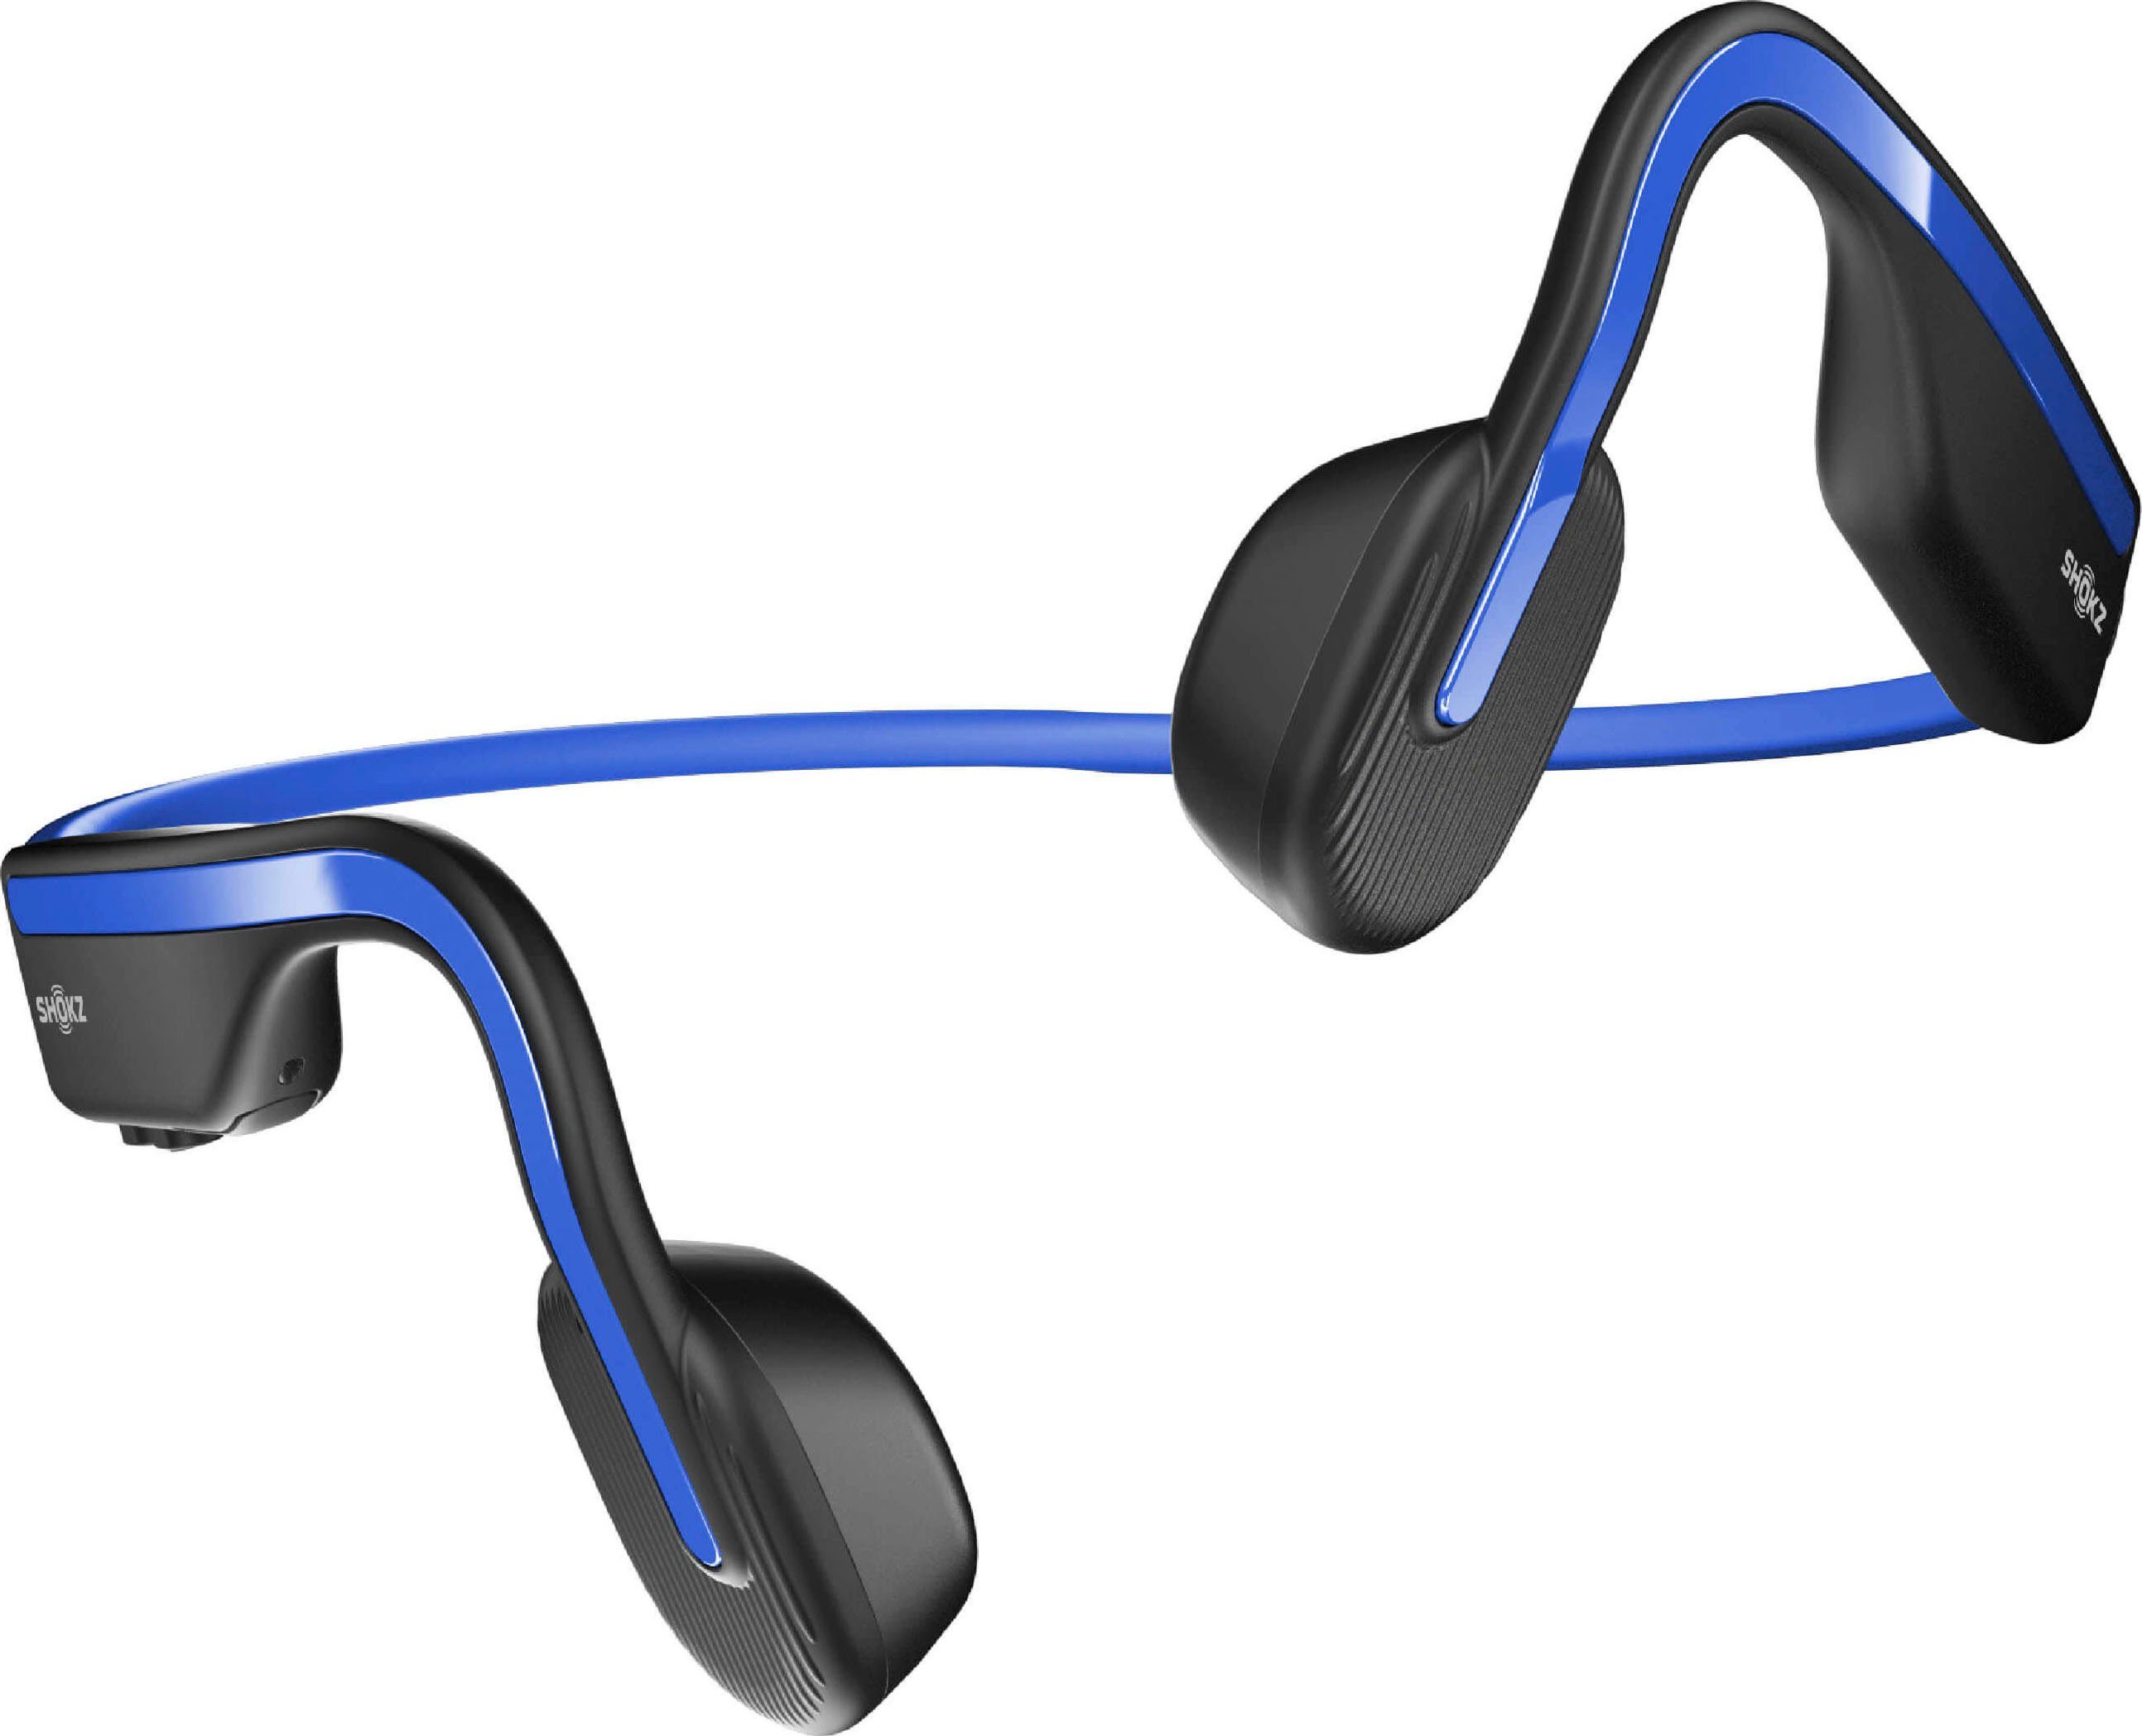 Shokz OpenMove Noise-Cancelling, Sport-Kopfhörer AVRCP Wireless) Bluetooth, Bluetooth, (Freisprechfunktion, blau Bluetooth, A2DP HSP, HFP